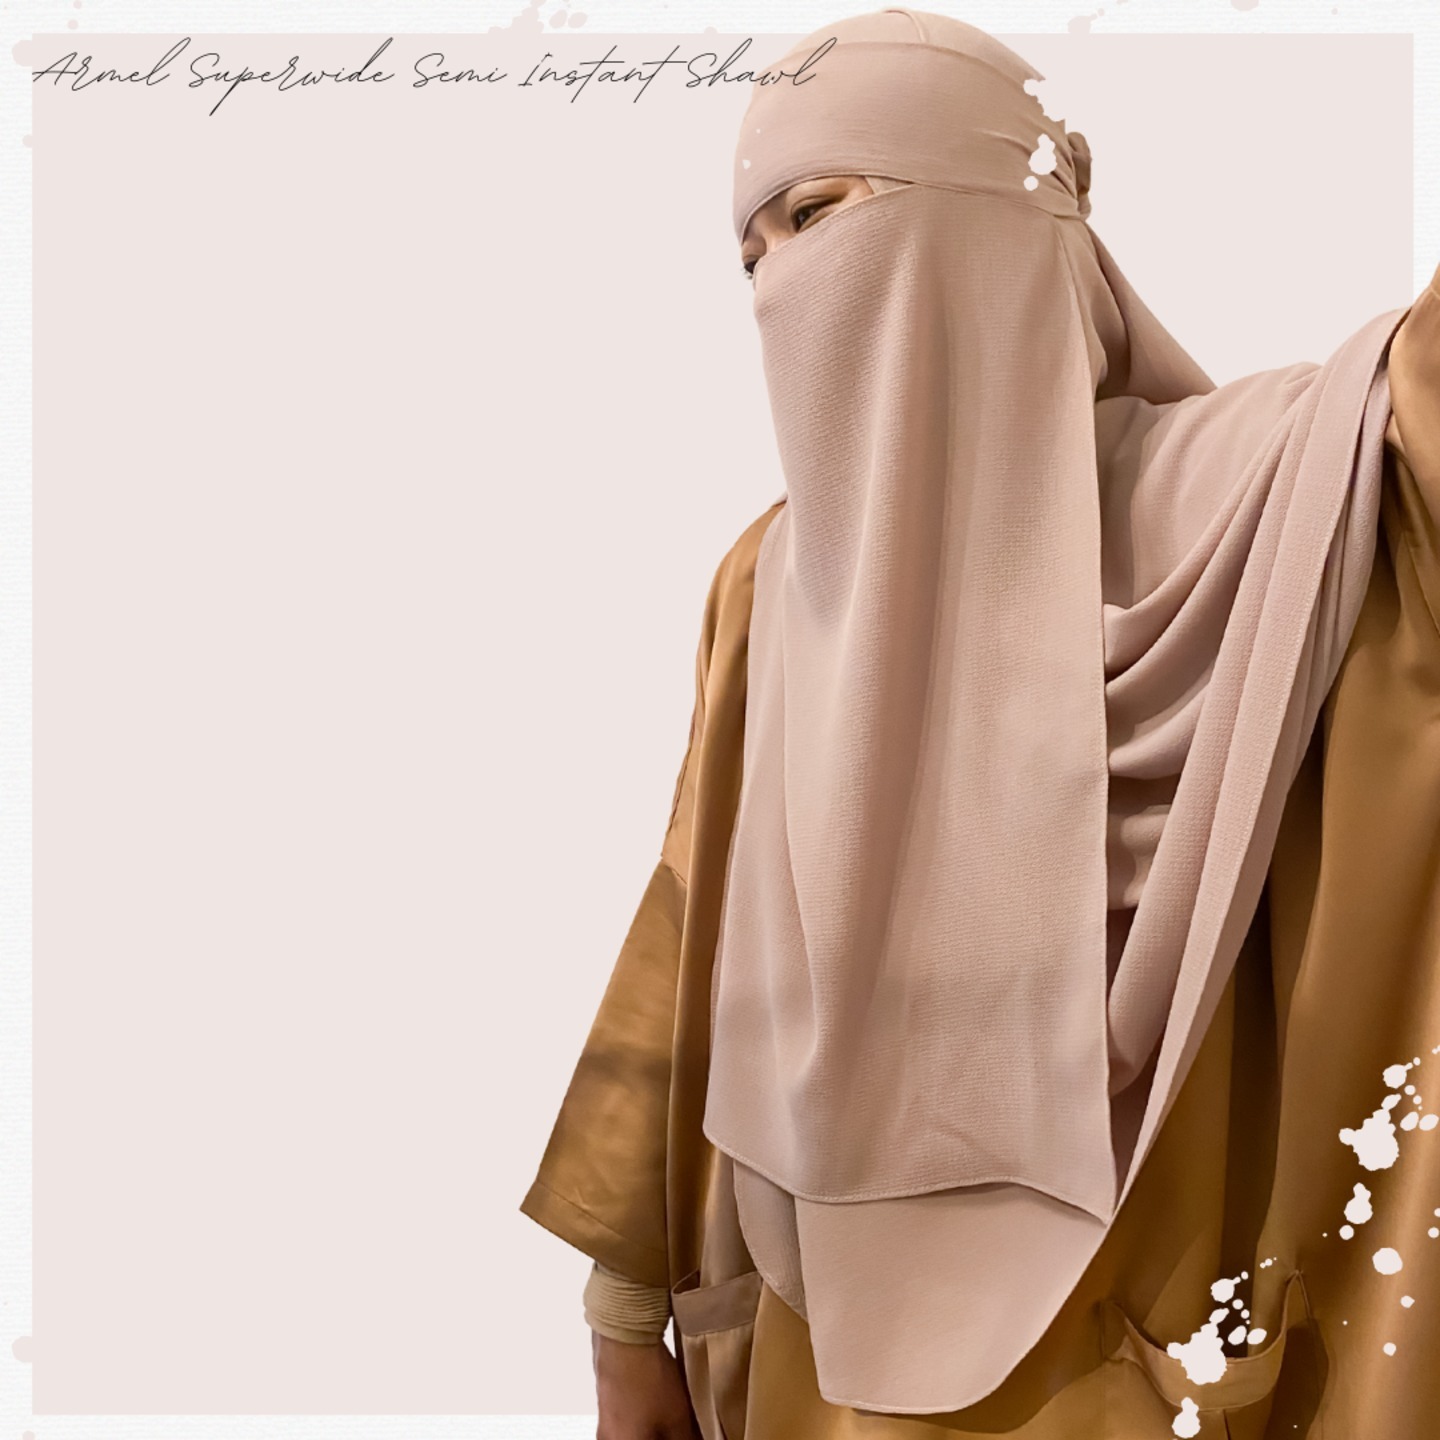 Armel Superwide Semi Instant Shawl  Bandana Niqab